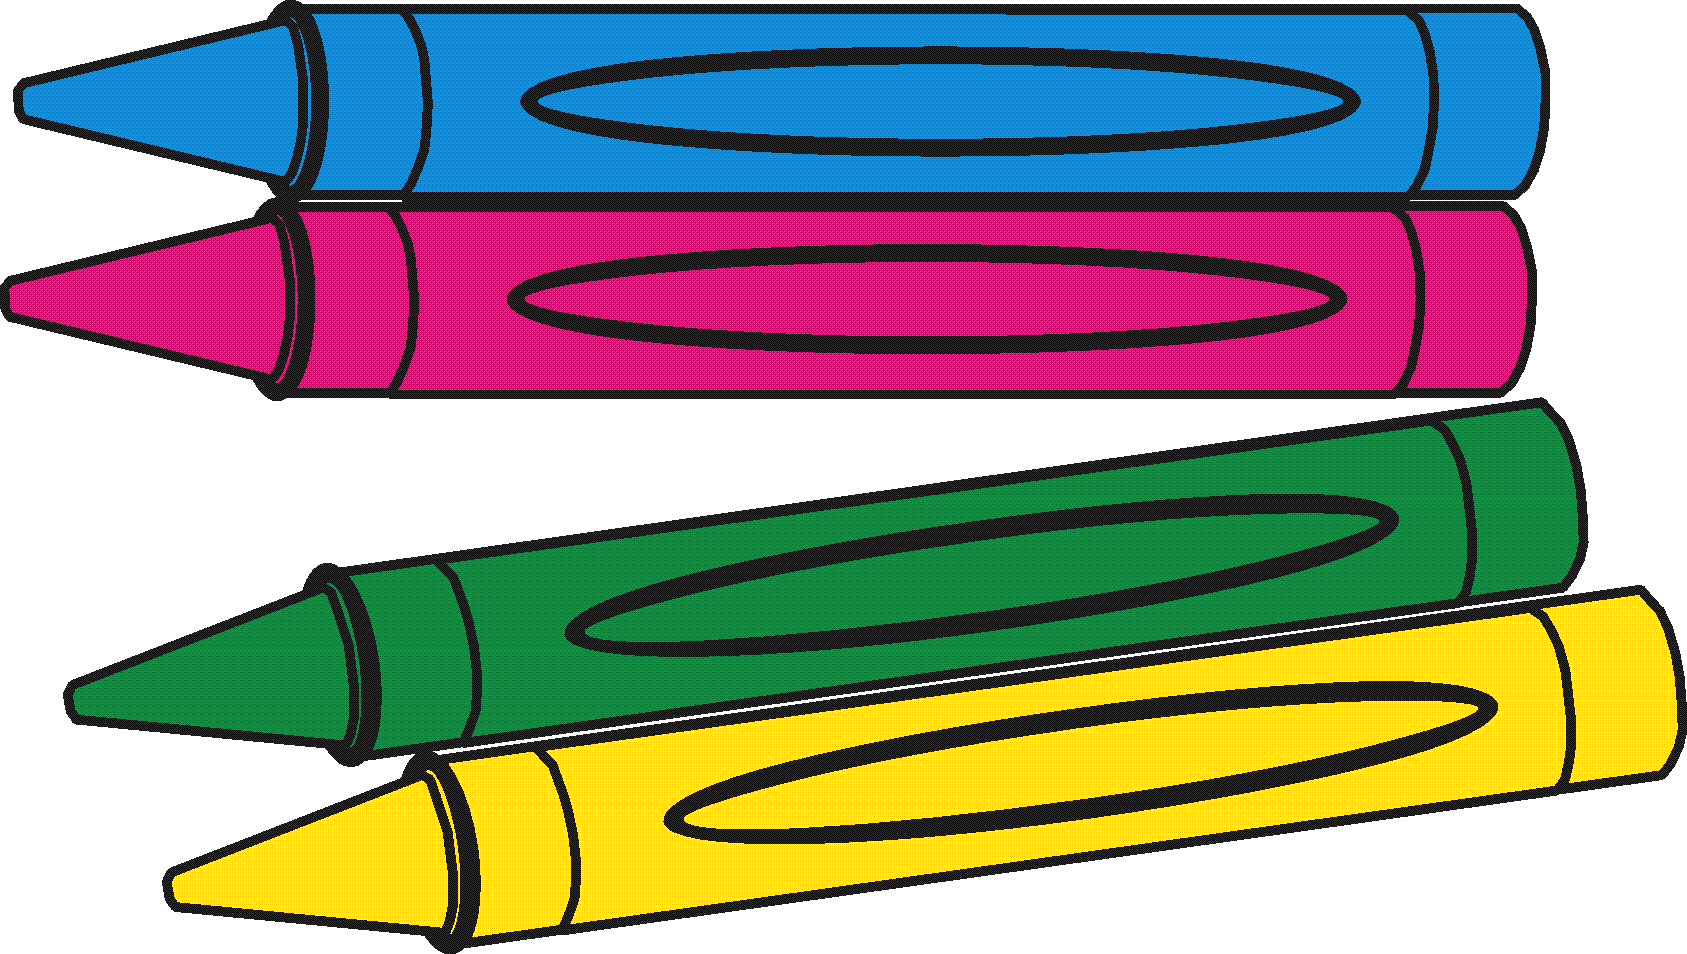 Crayola Crayon Clipart